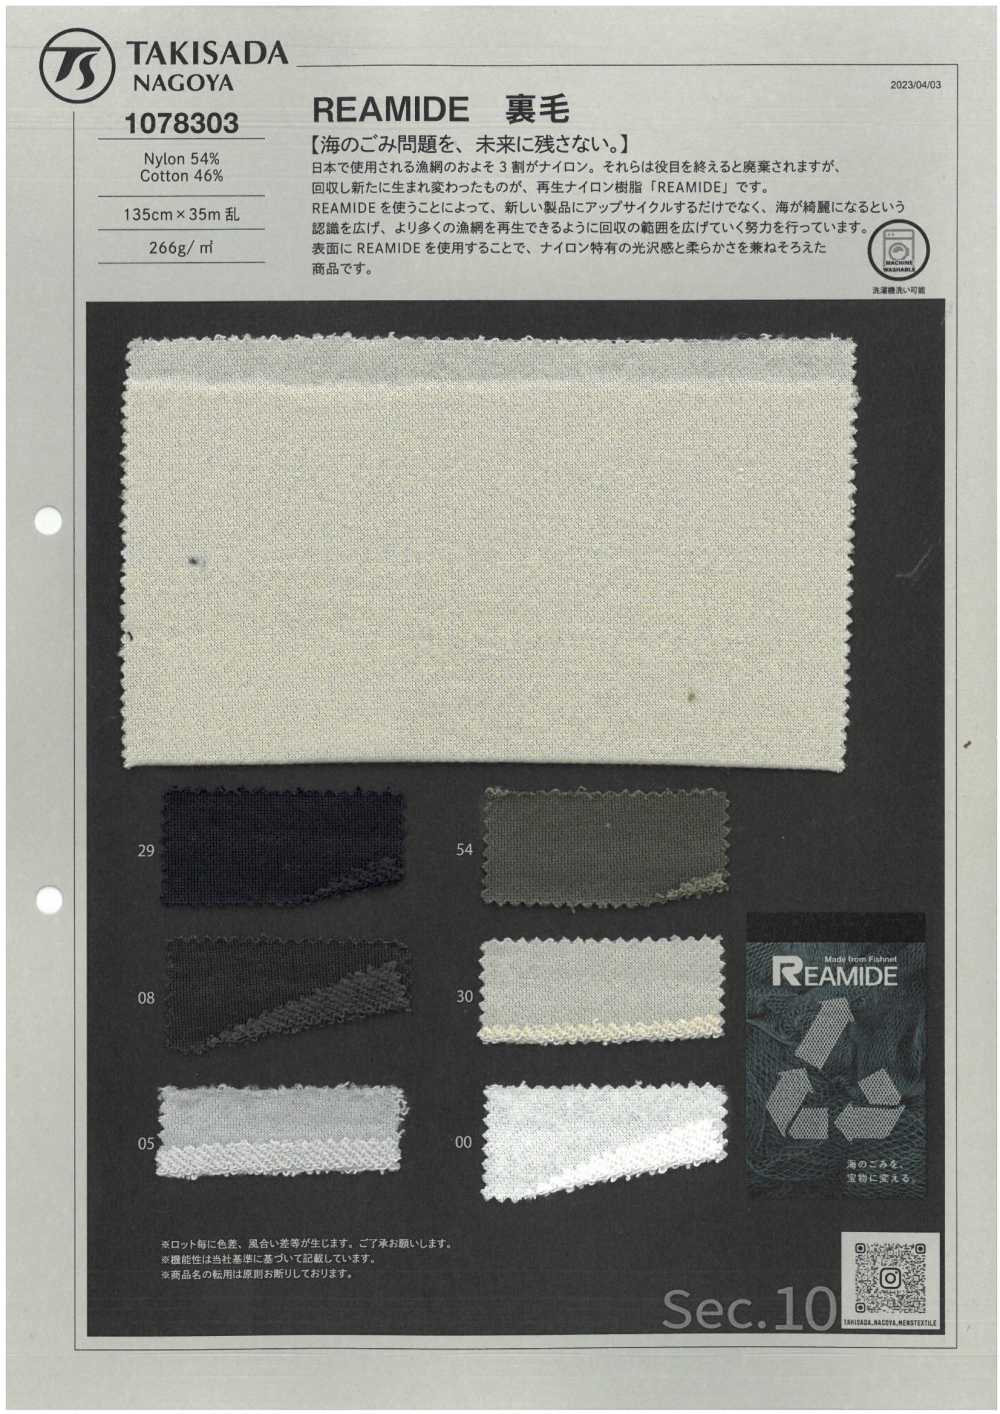 1078303 REAMIDE-Fleece[Textilgewebe] Takisada Nagoya